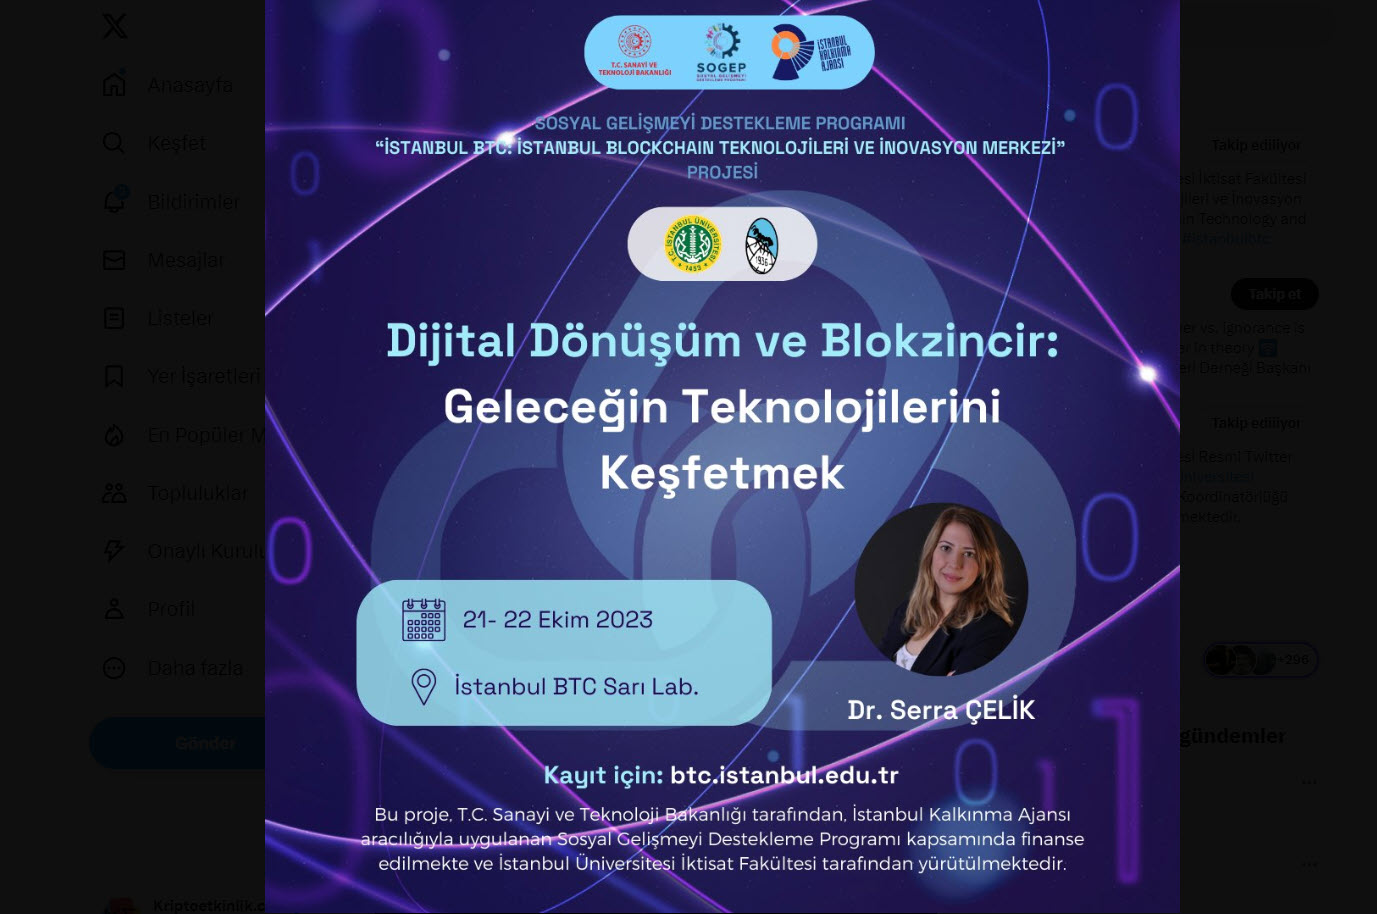 Dijital Dönüşümün Vazgeçilmezi: Blokzincir & İstanbul BTC